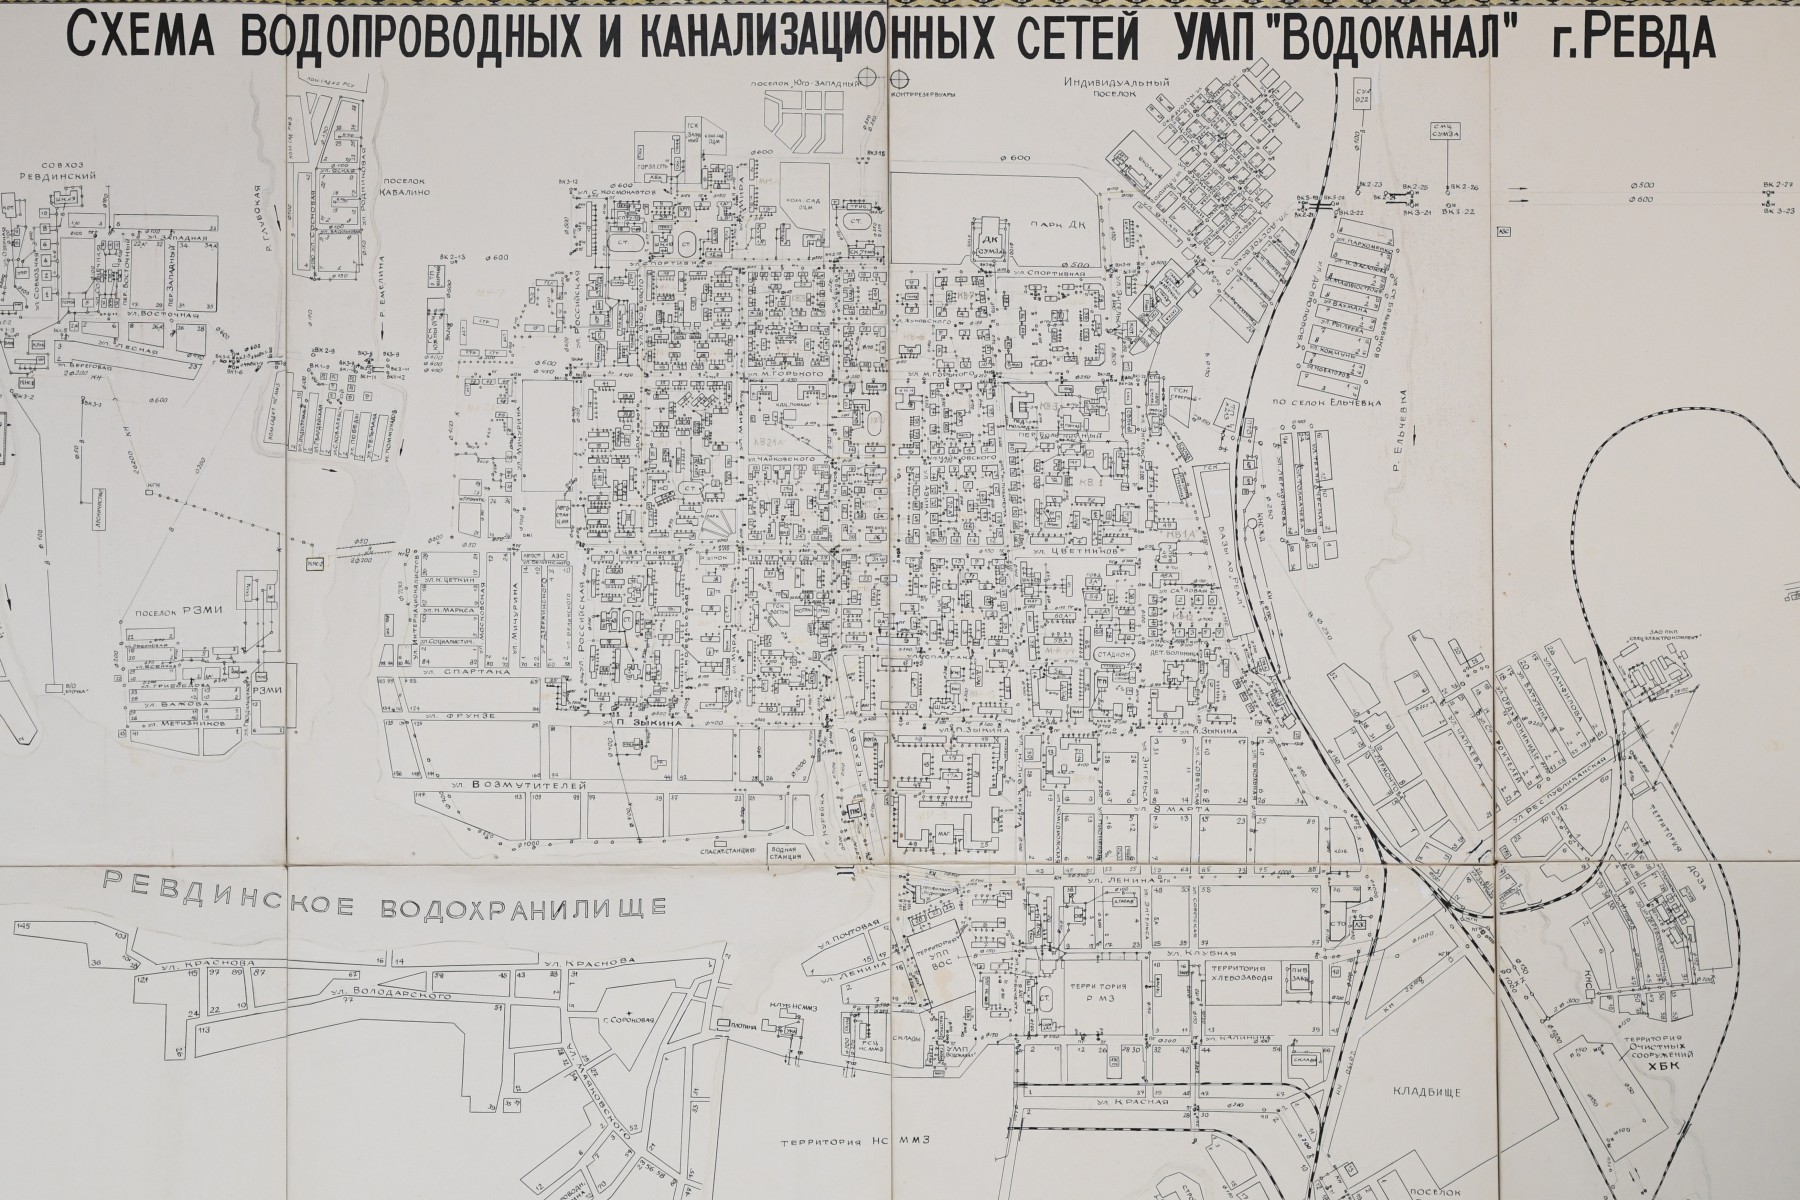 Схема водопроводных и канализационных сетей Ревды. Фото из архива редакции